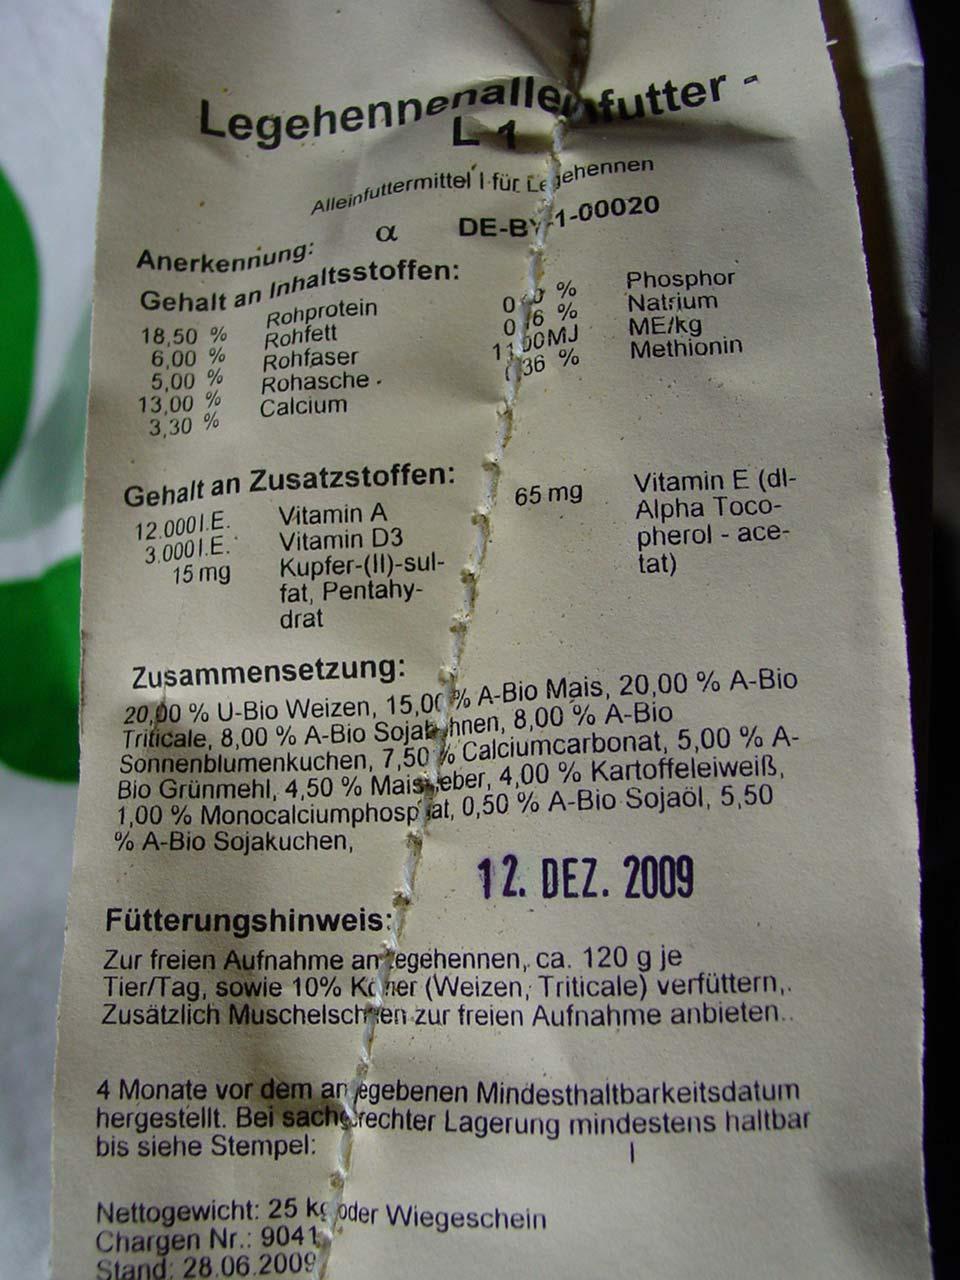 Kennzeichnung Mischfuttermittel Tierart ( z. B. Legehennen) Bezeichnung (Alleinfuttermittel) Registrier Zulassungsnr.